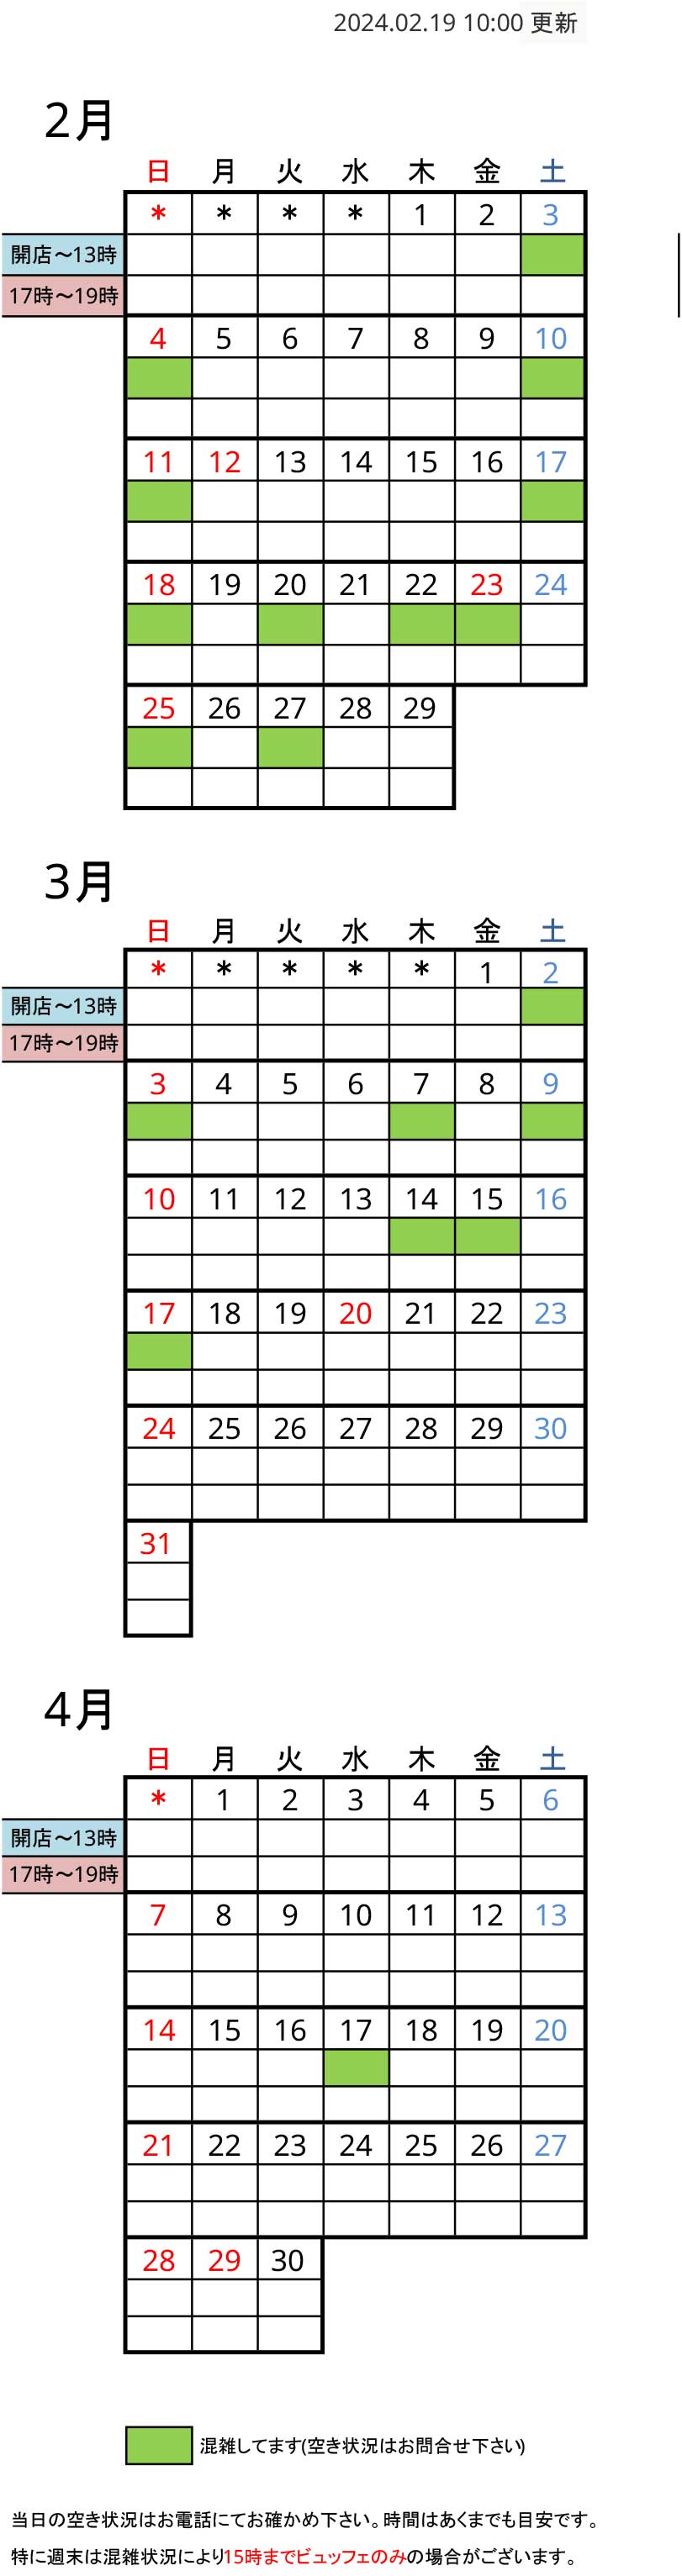 予約状況カレンダー